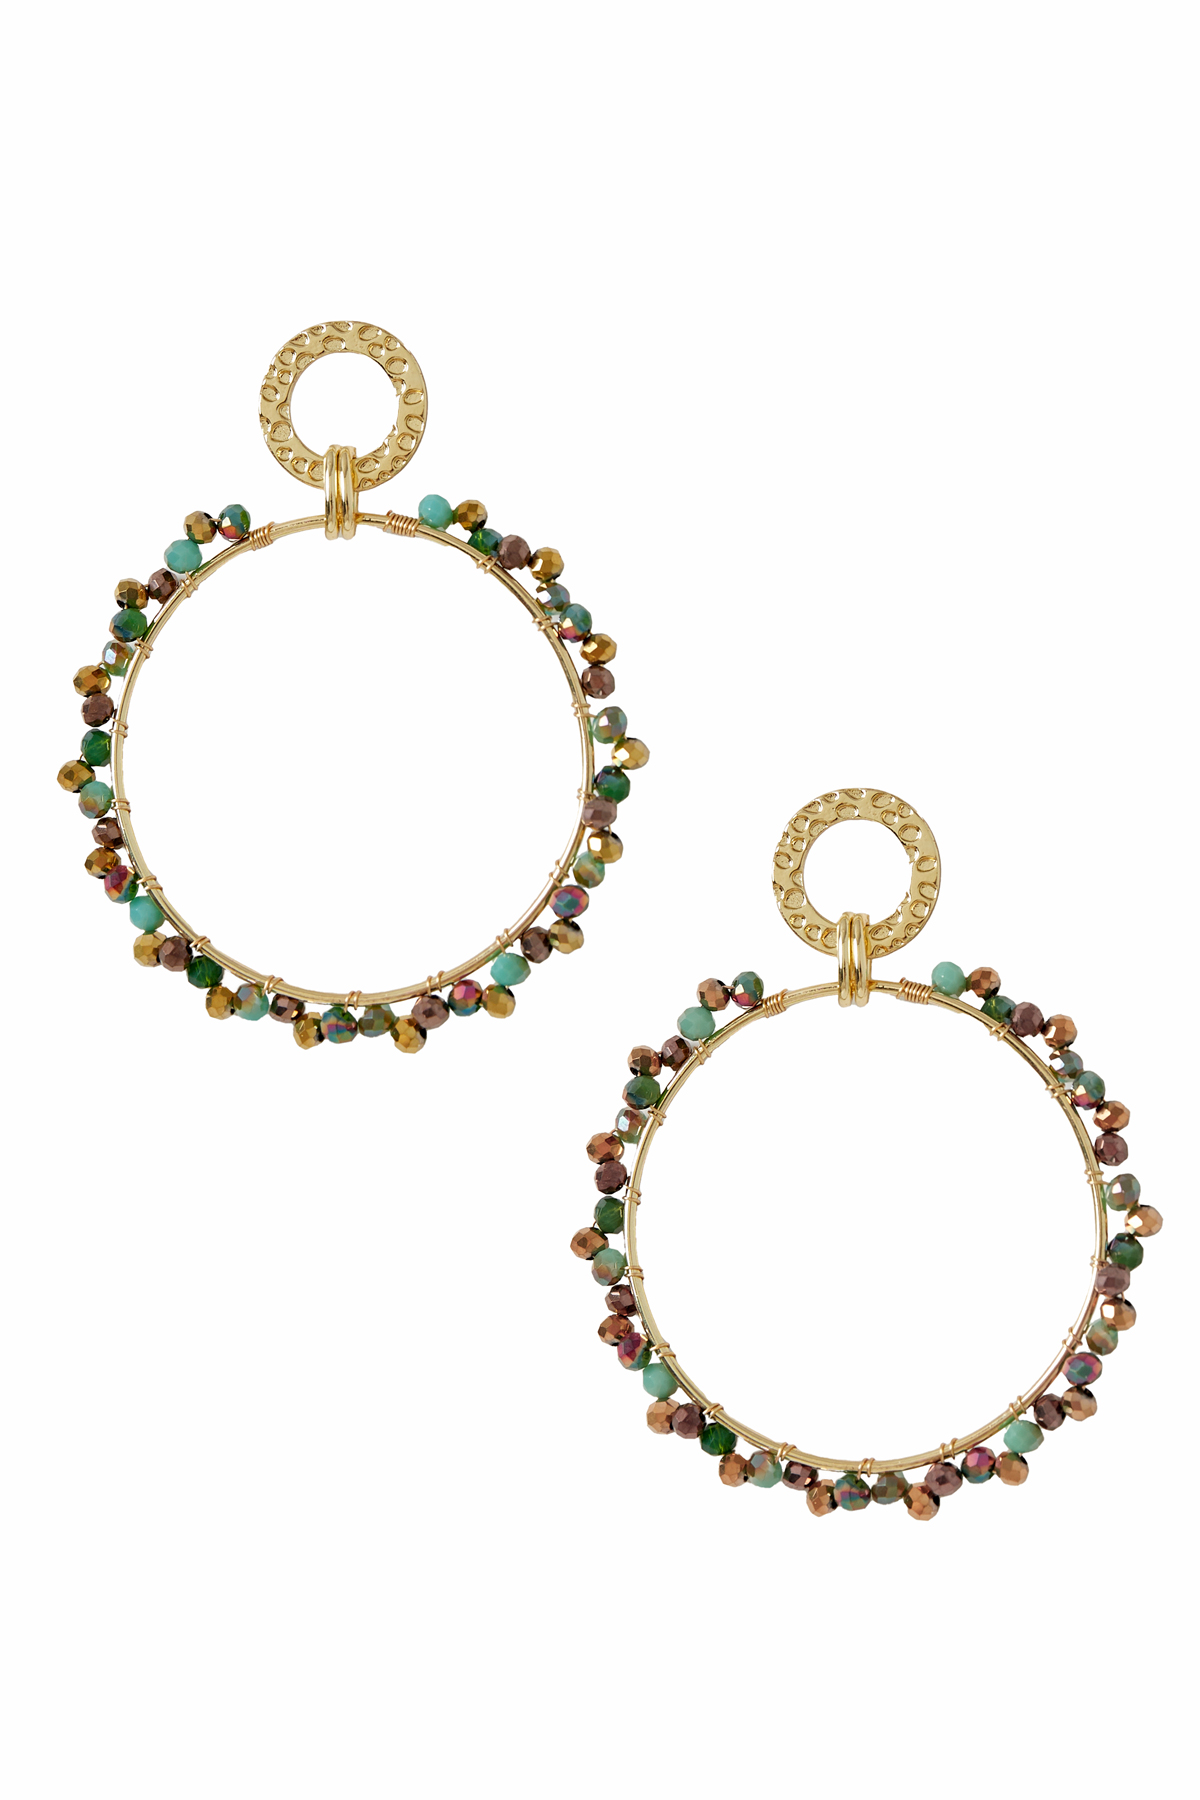 Ohrringe runder Doppelkreis mit bunter Perle - gold/grün